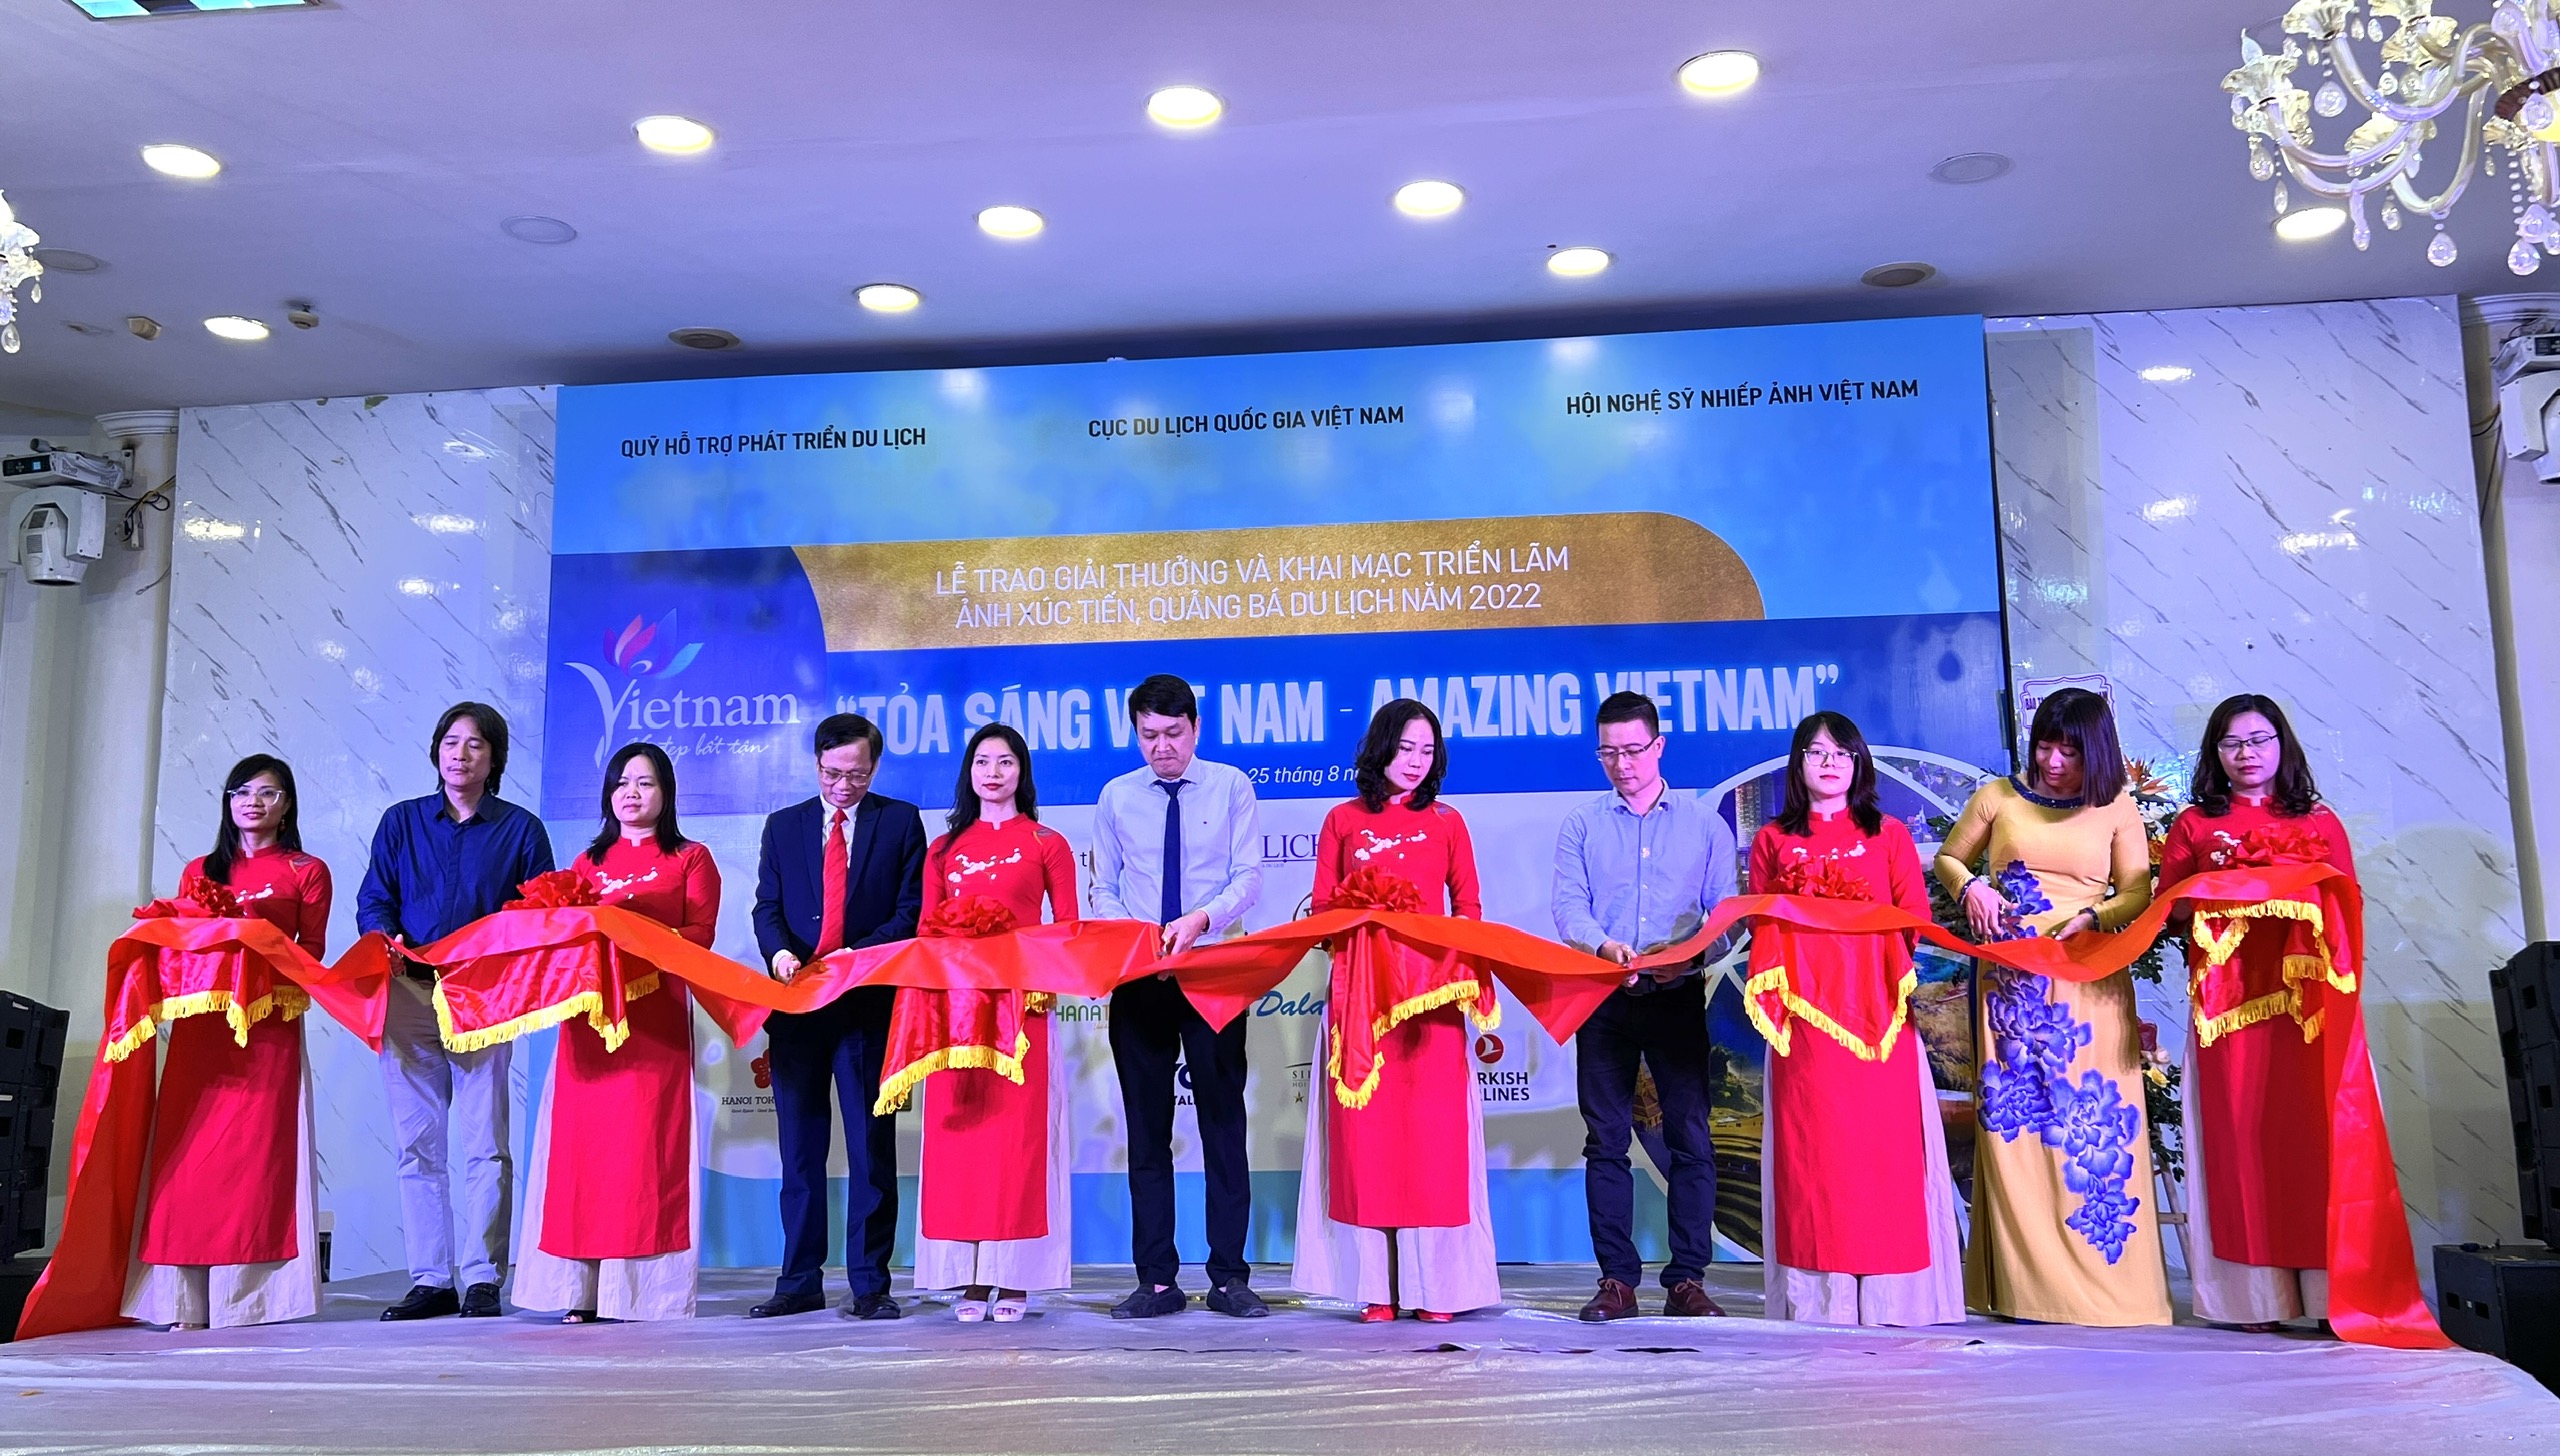 Trao giải và Khai mạc triển lãm ảnh “Tỏa sáng Việt Nam - Amazing Vietnam” 2022